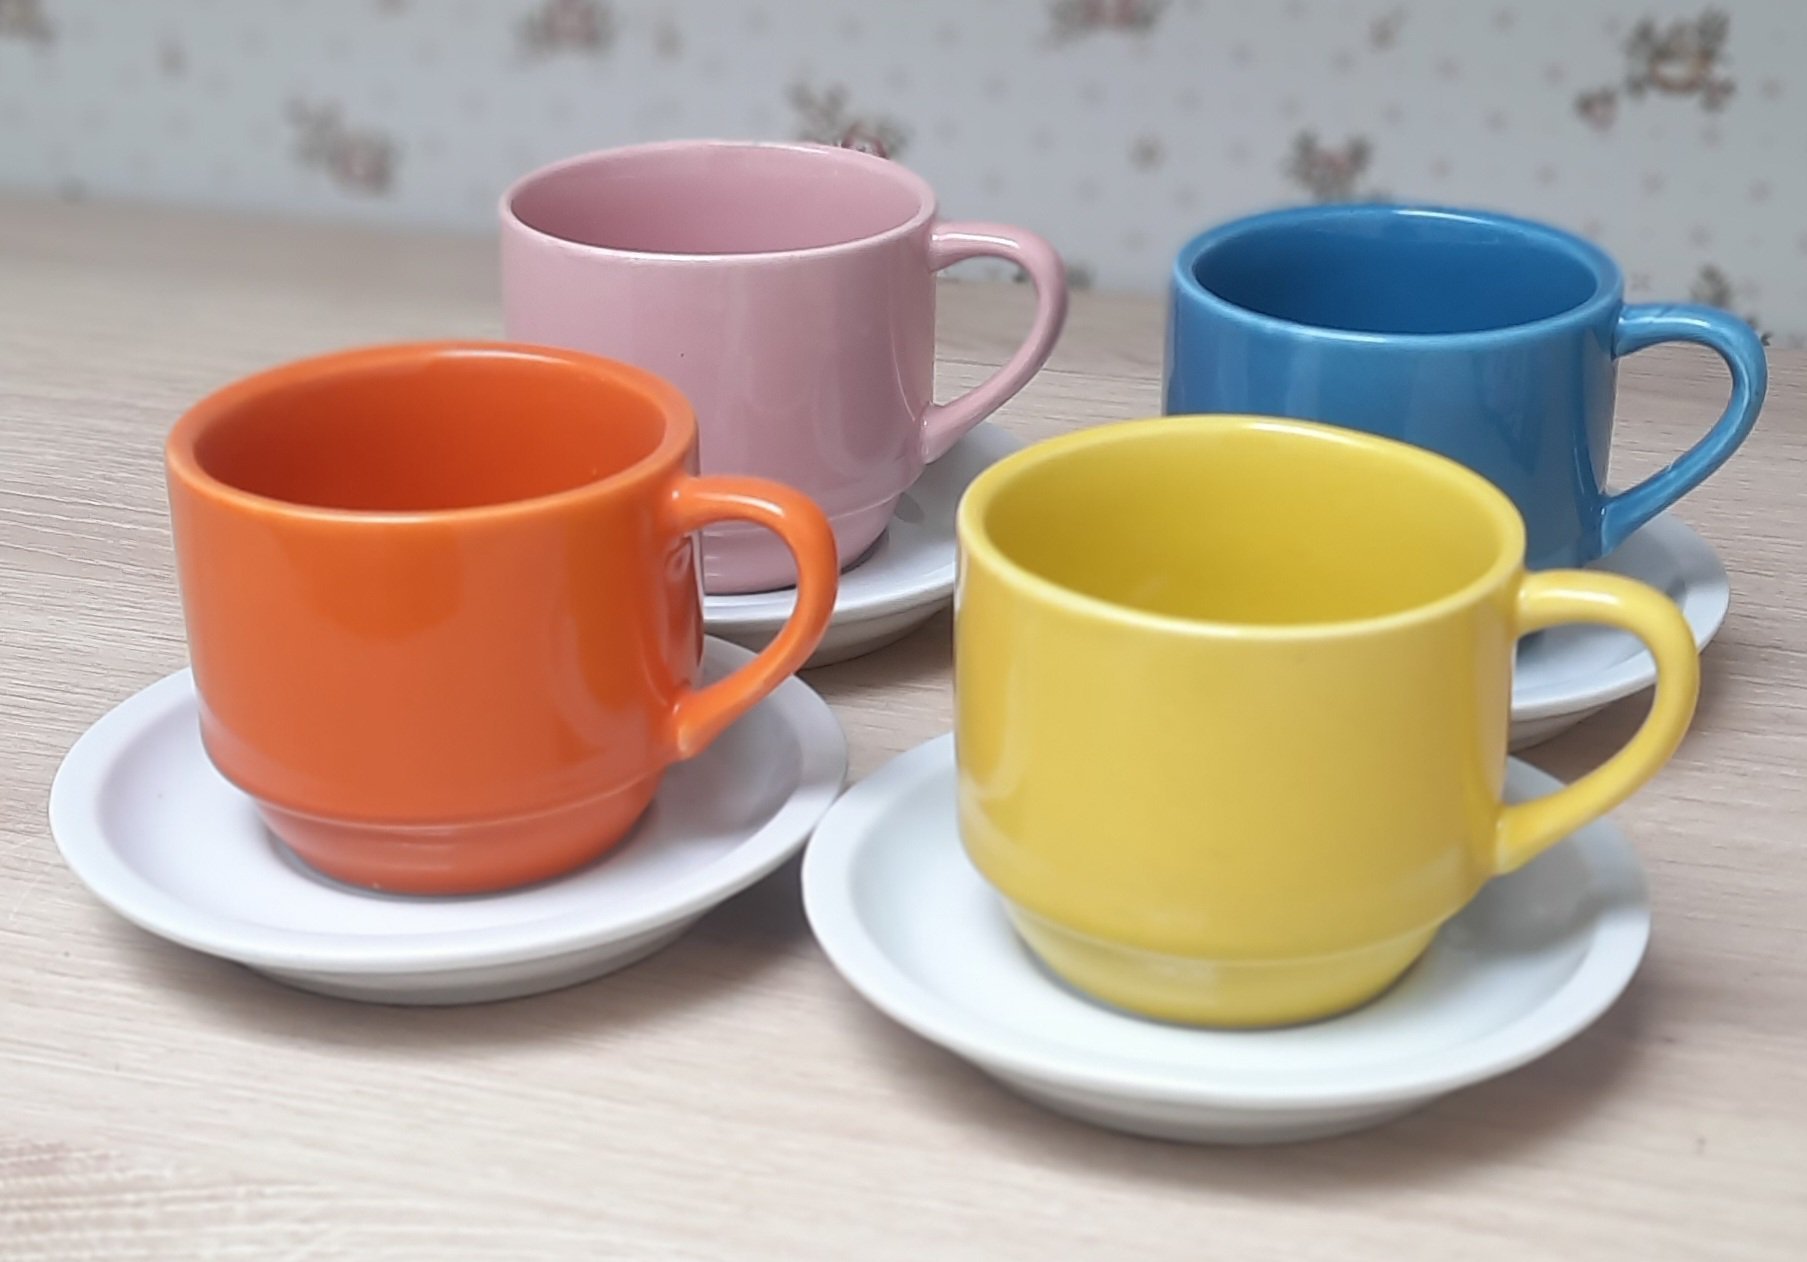 Jogo 4 xícaras de Café e Chá com pires - 200 ml Empilháveis - Porcelana Colorida - 7